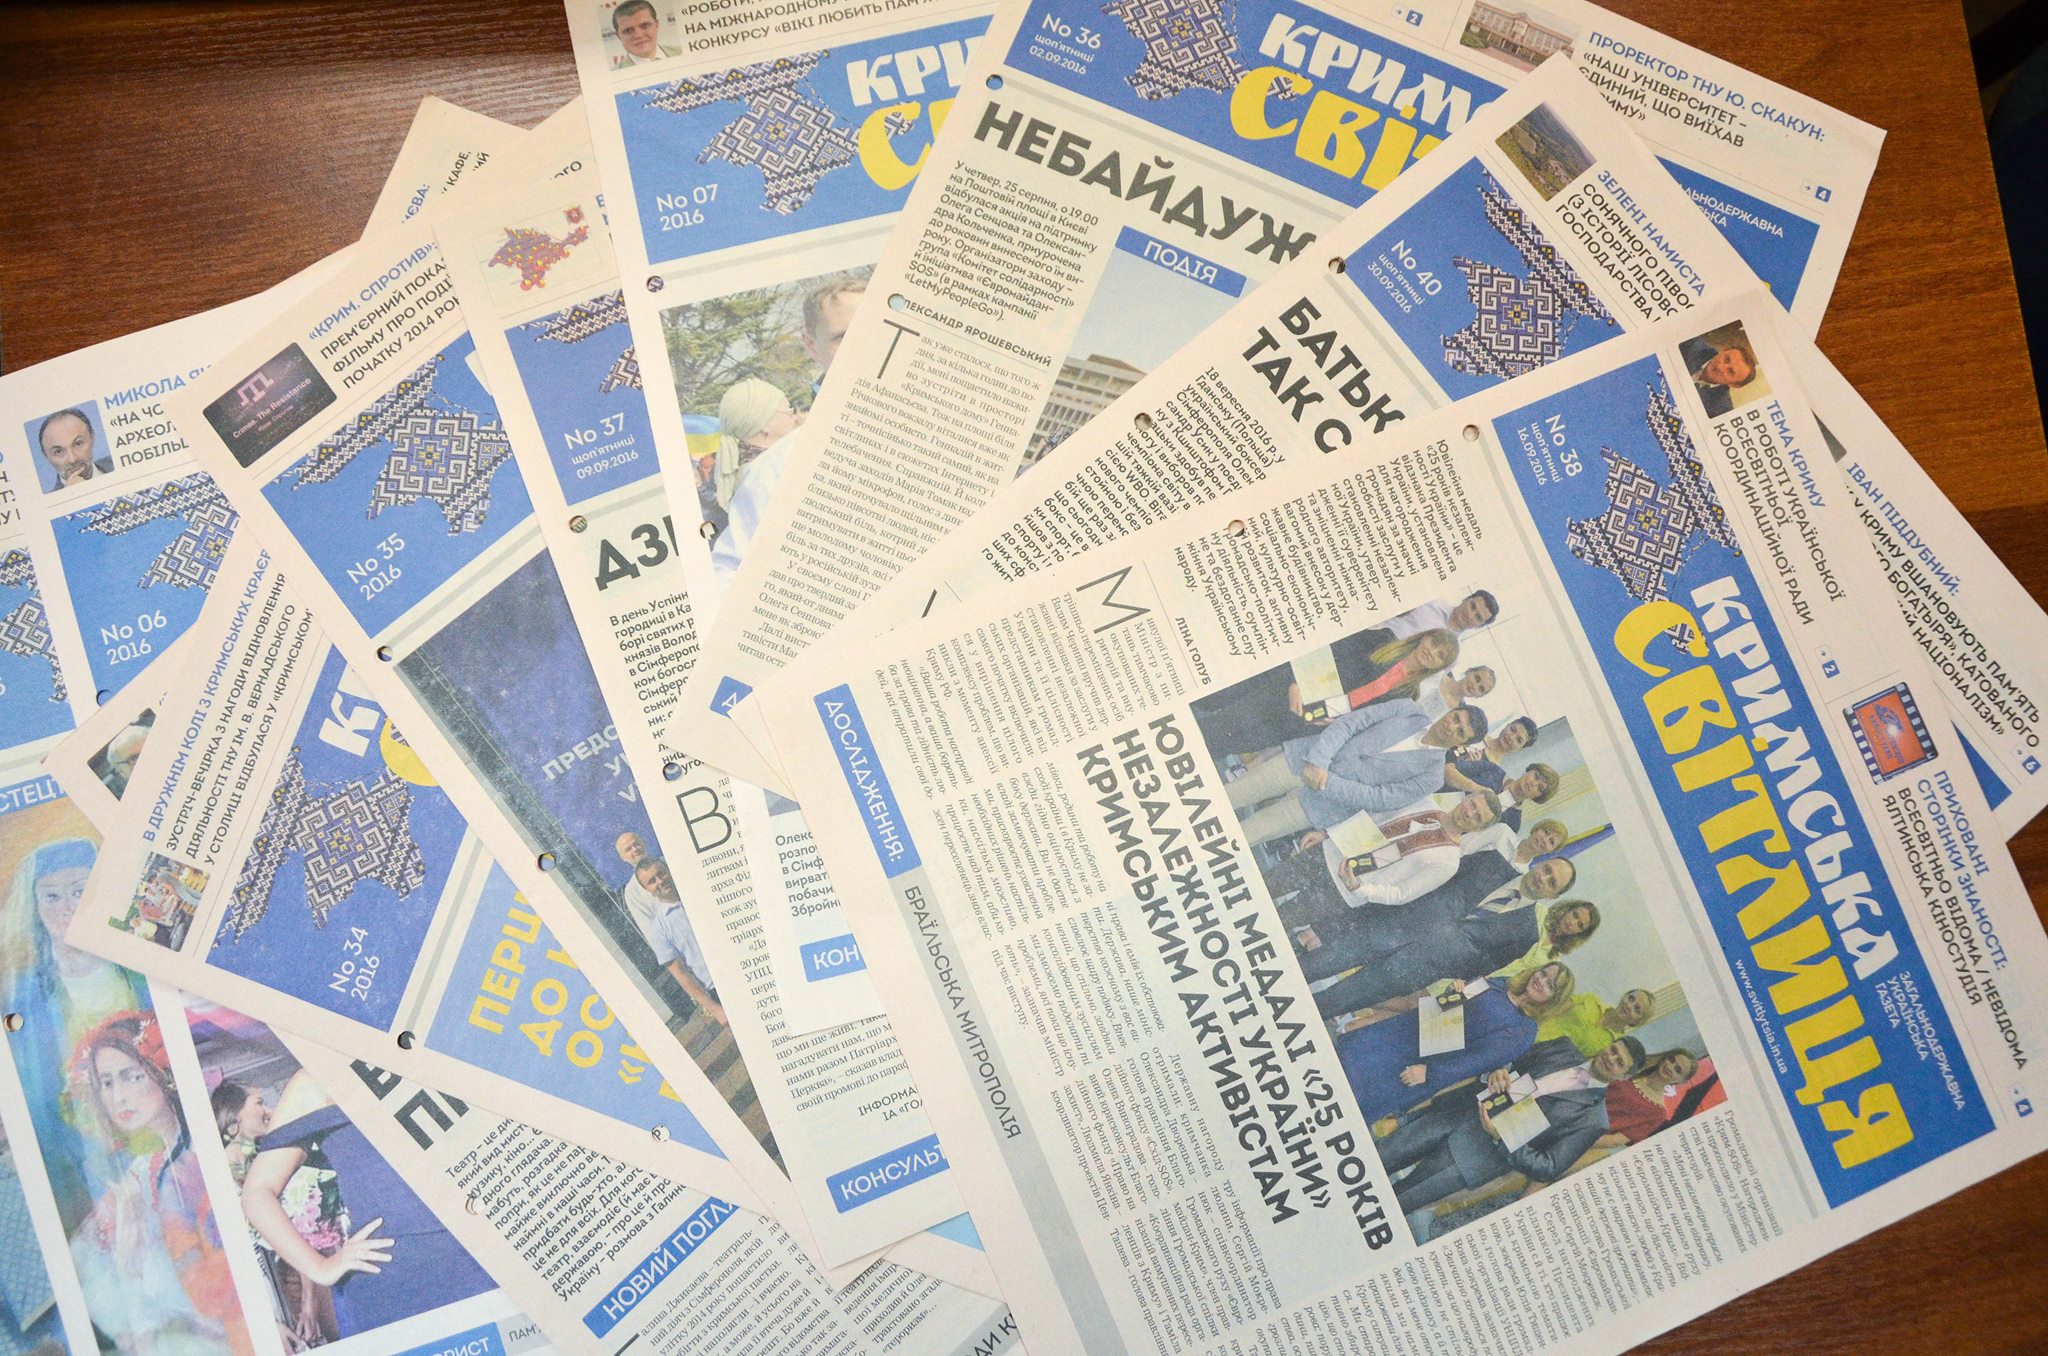 Газета «Кримська світлиця» стане доступною для світової спільноти